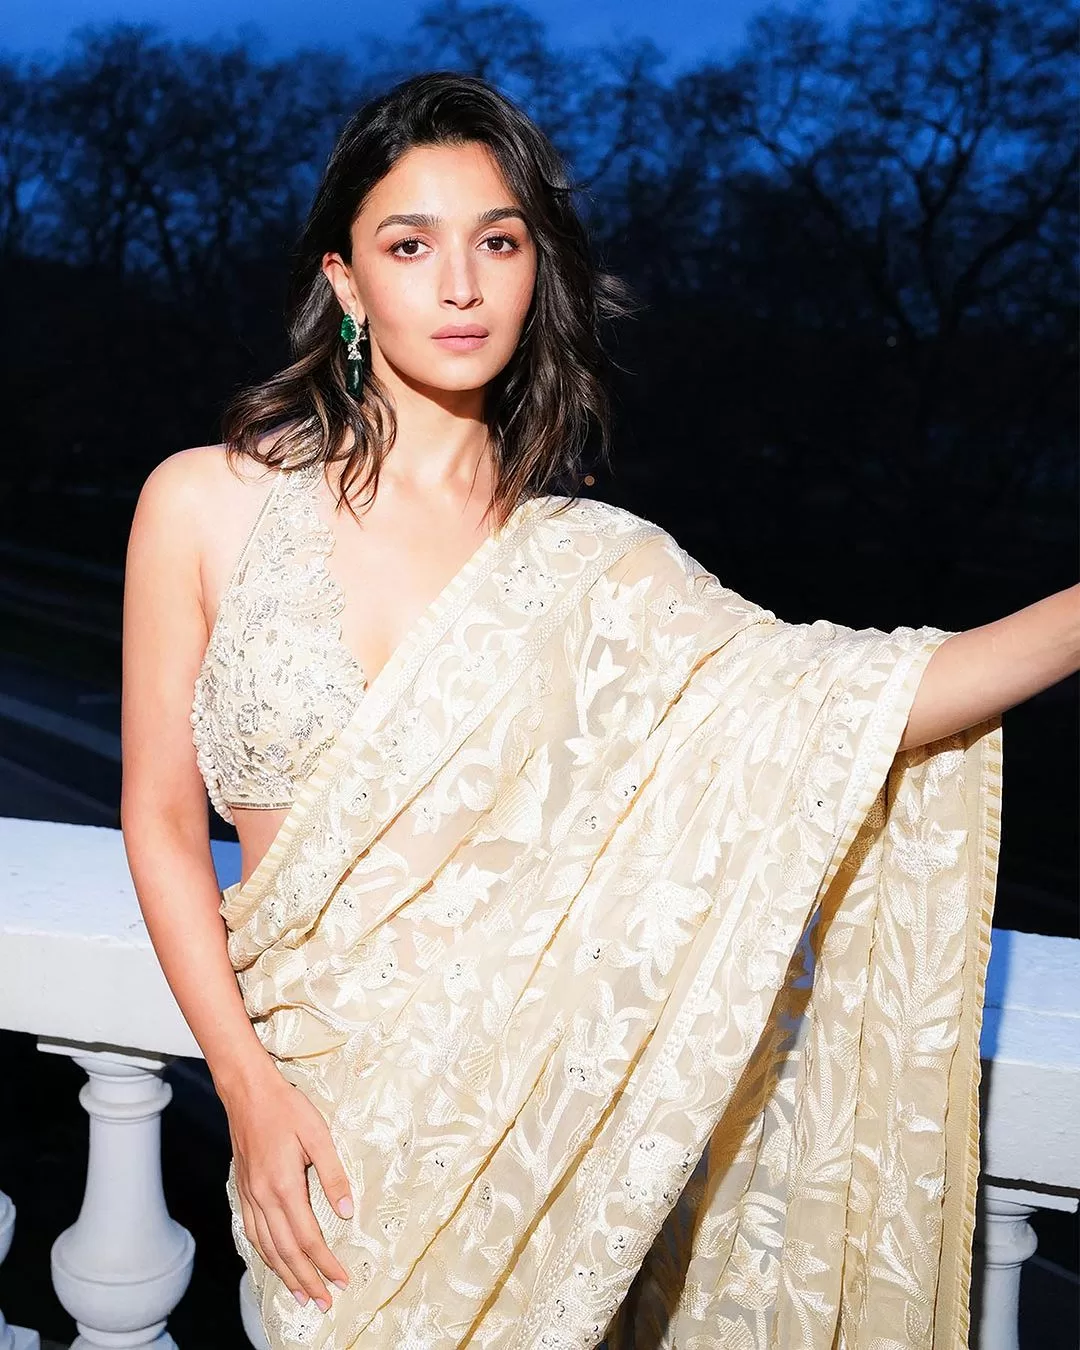 At London's Hope Gala, Alia Bhatt wore diamond jewellery worth ₹20 crore.